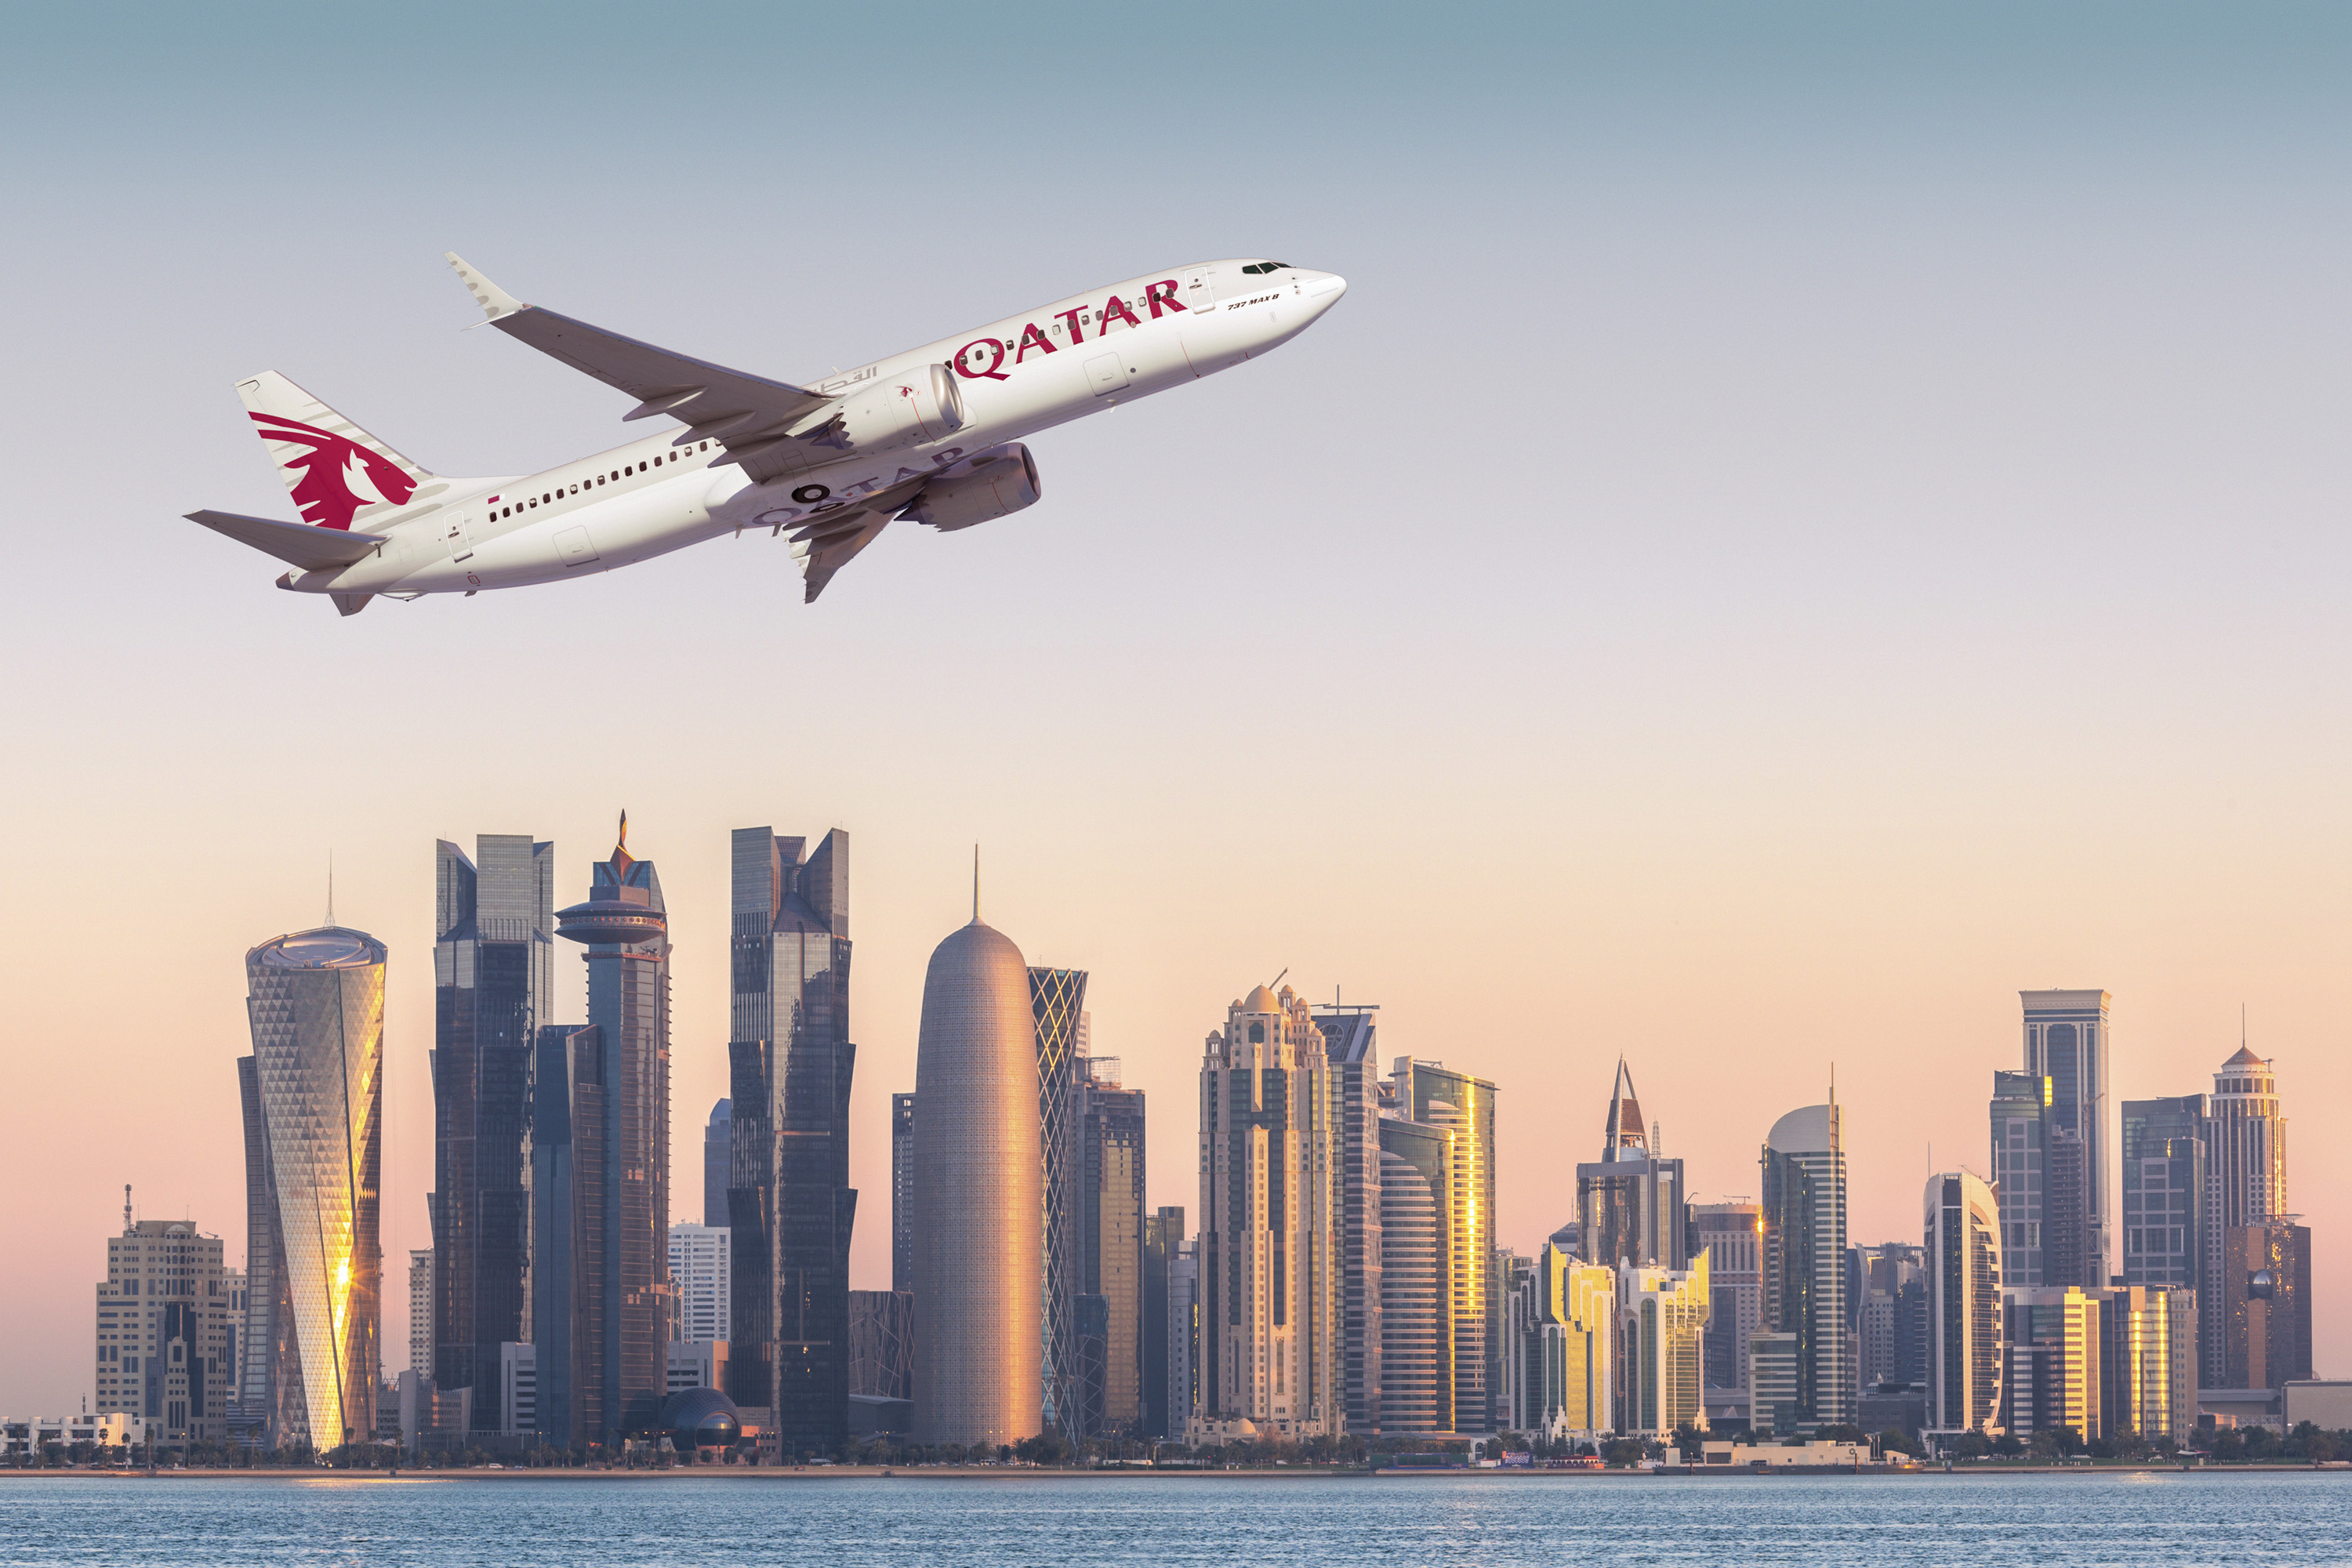 Doha financial center skyline at sunrise, Qatar.